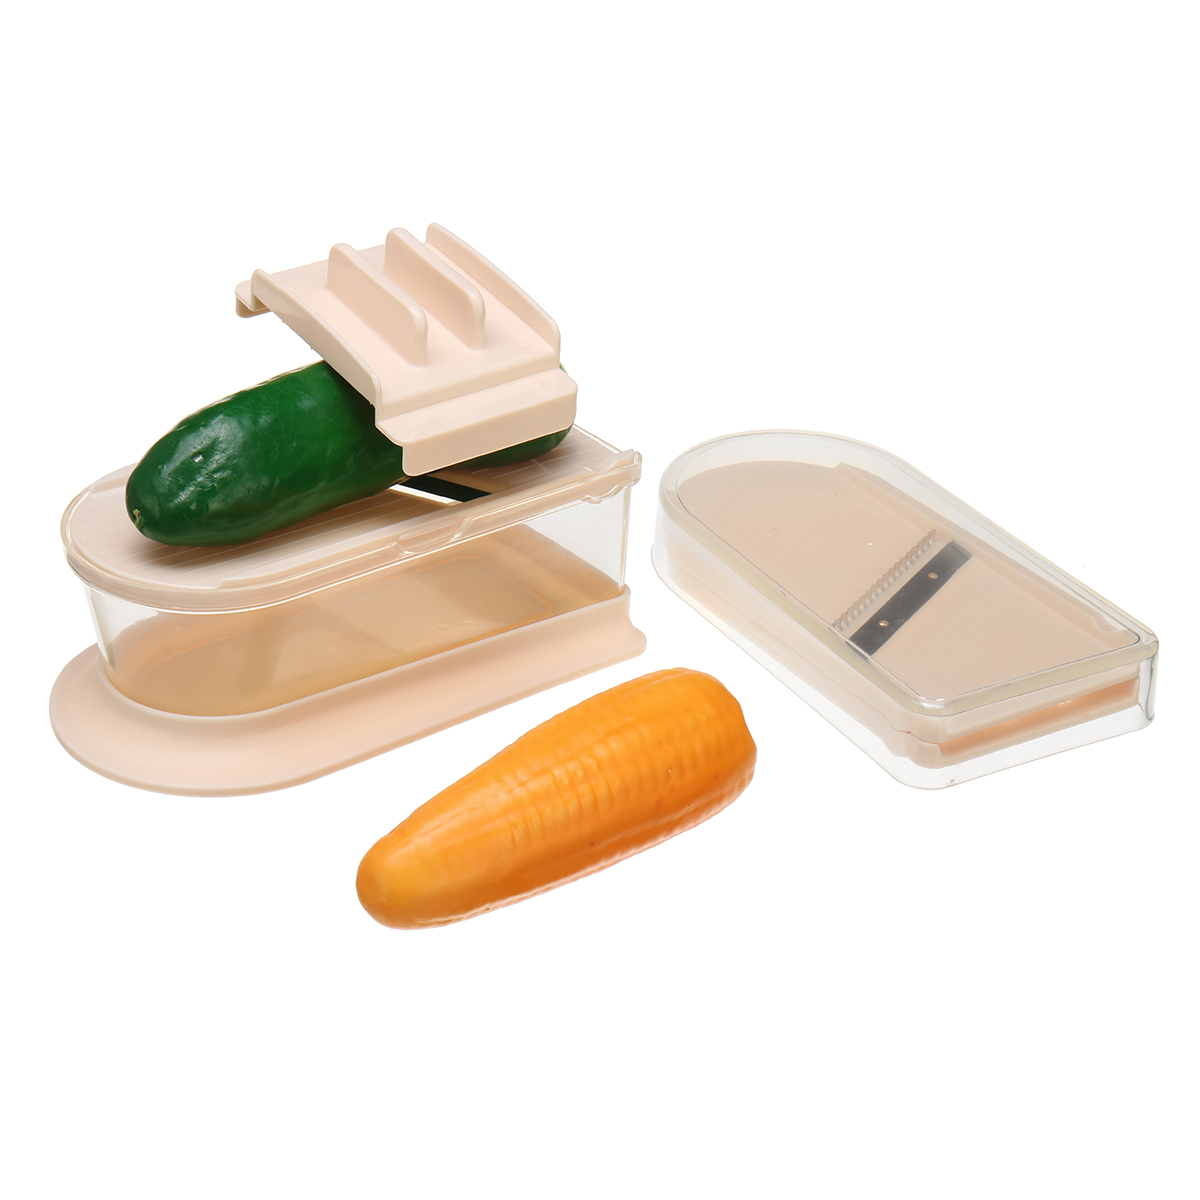 Slicer-Potato-Peeler-Vegetable-Cutter-w-Steel-Blade-Carrot-Cheese-Cutter-1477003